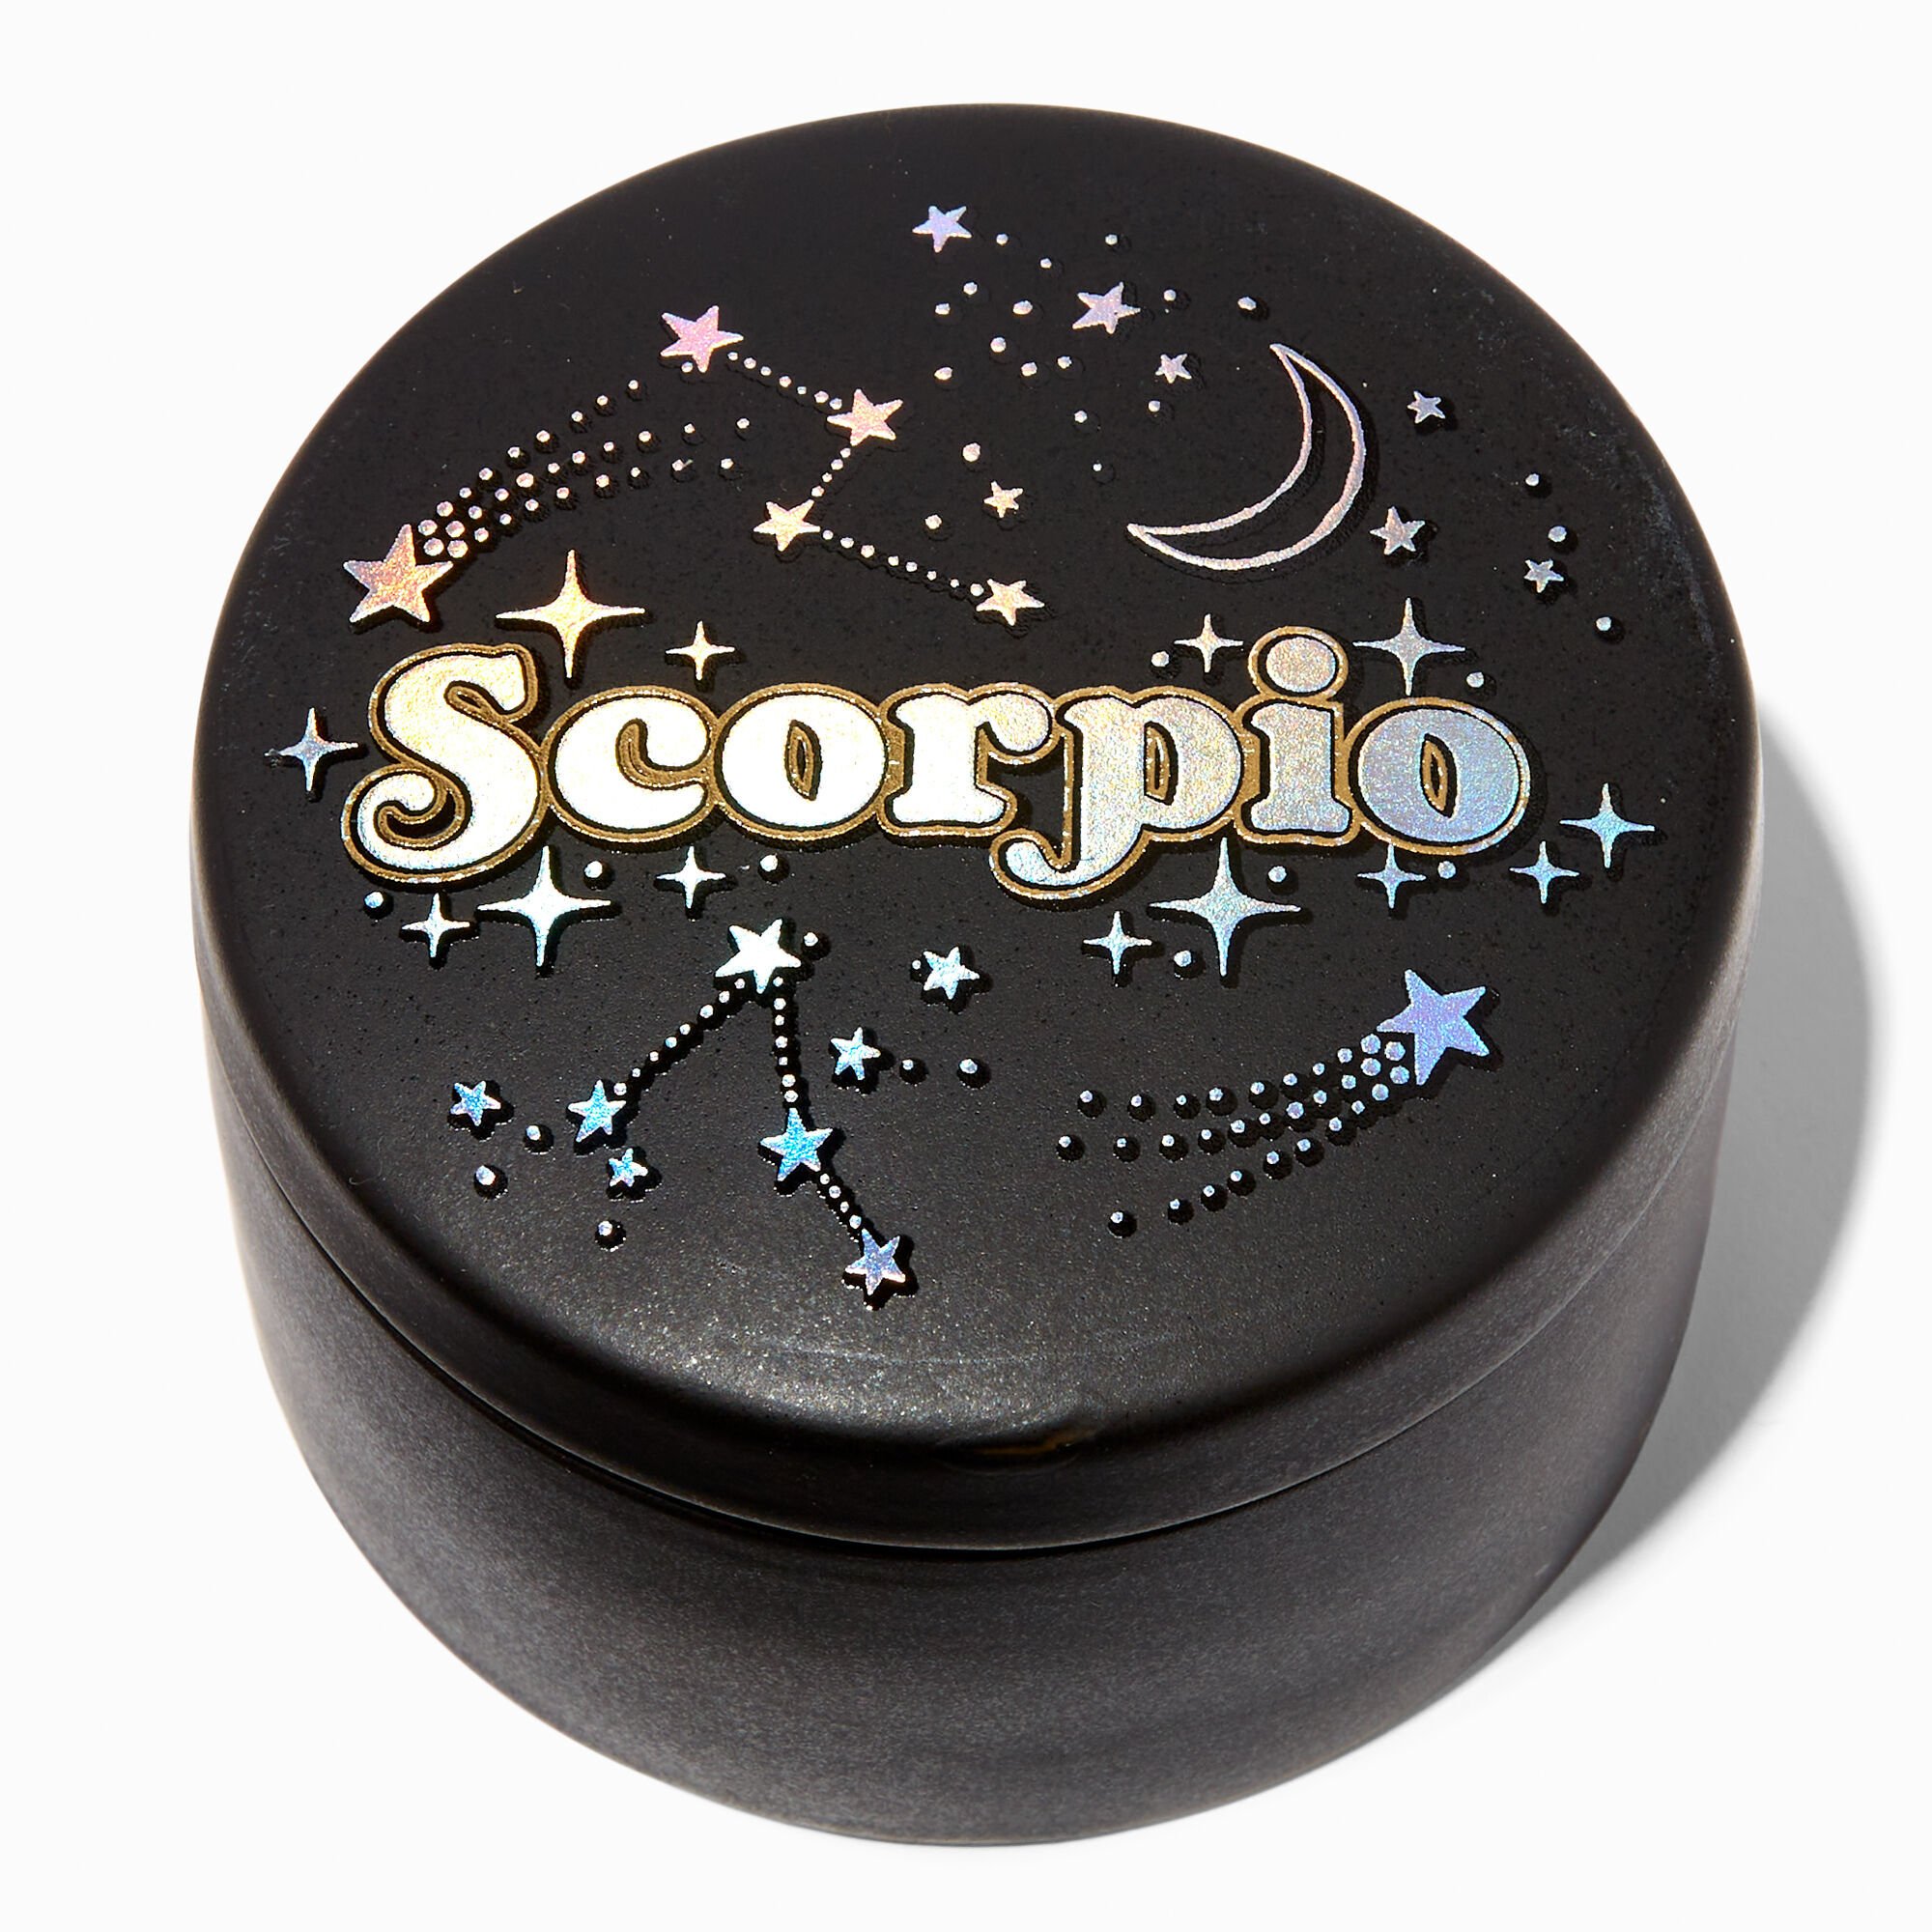 claire's zodiac trinket keepsake box - scorpio